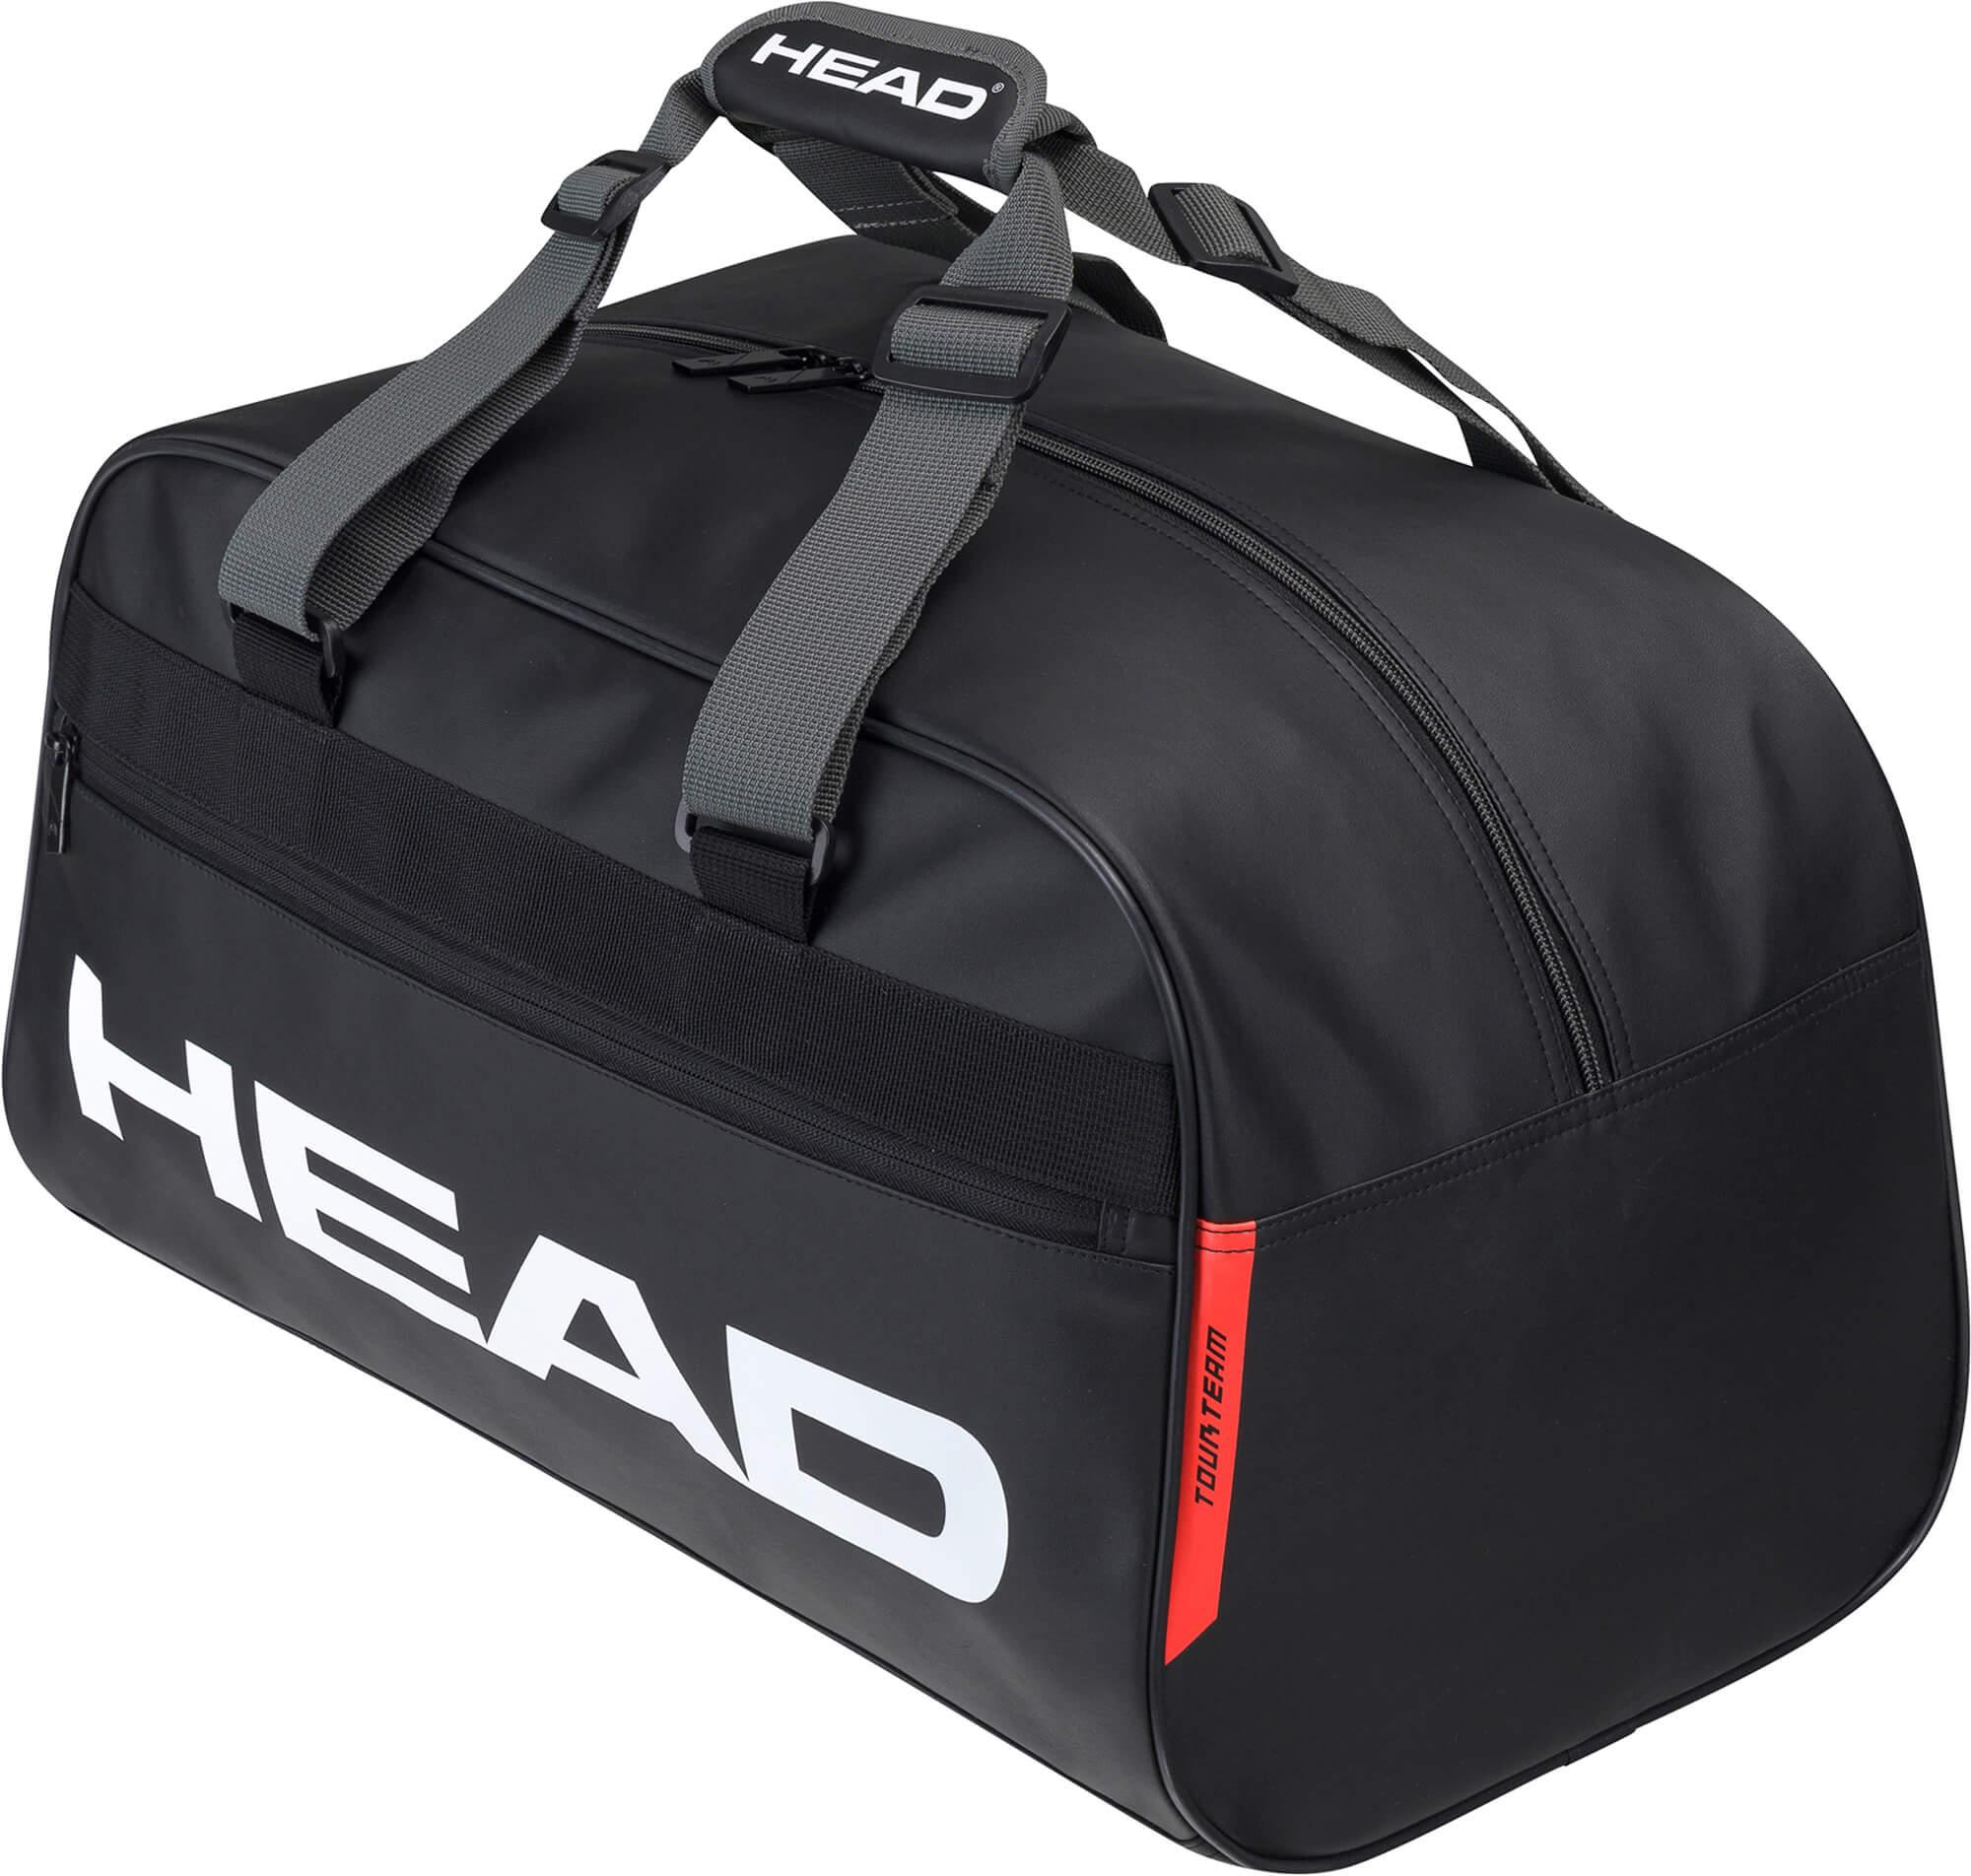 head tour team court bag